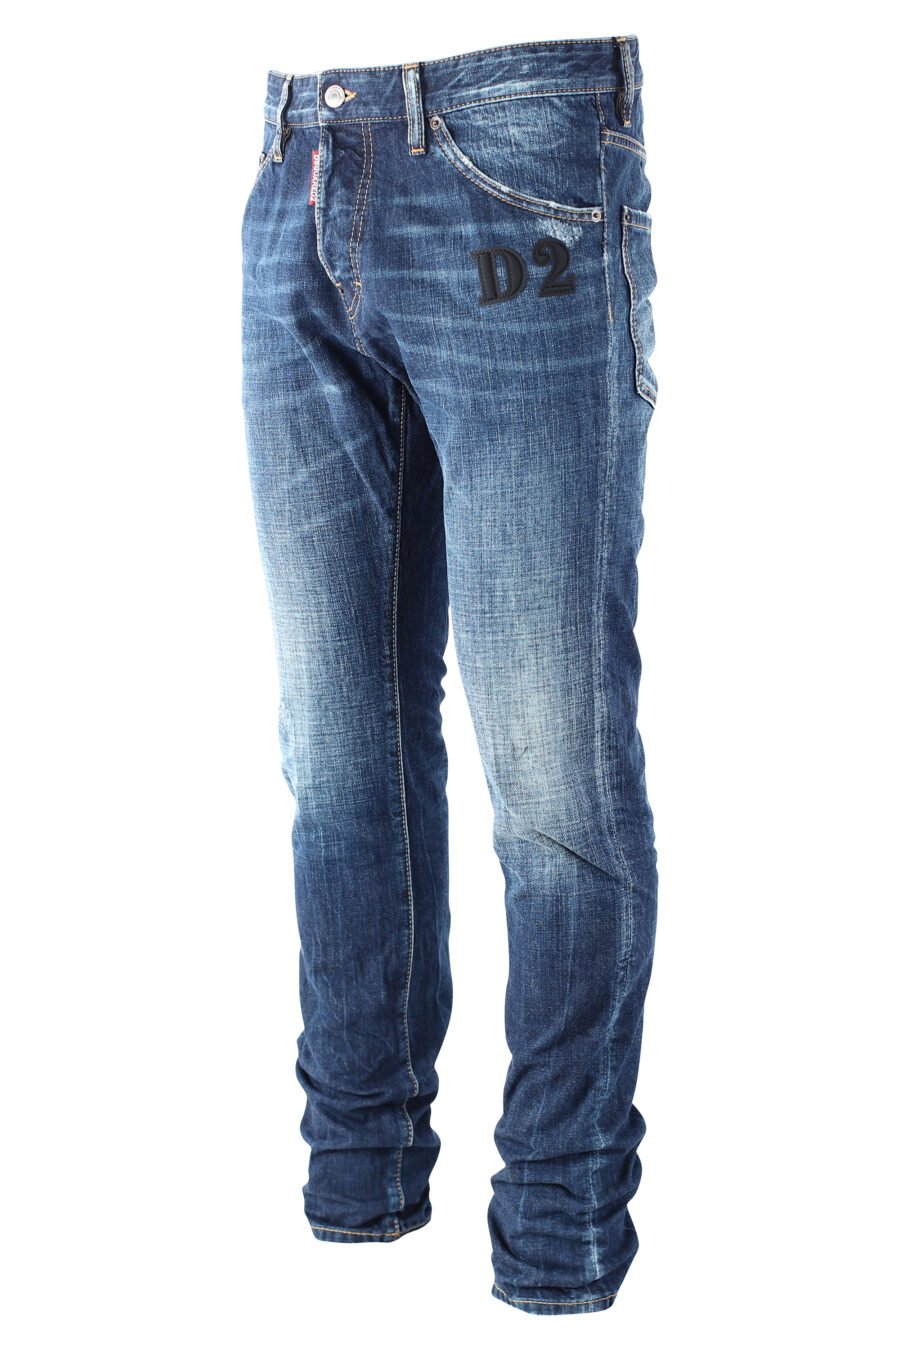 Pantalón vaquero "cool guy jean" azul con logo "D2" negro - IMG 9688